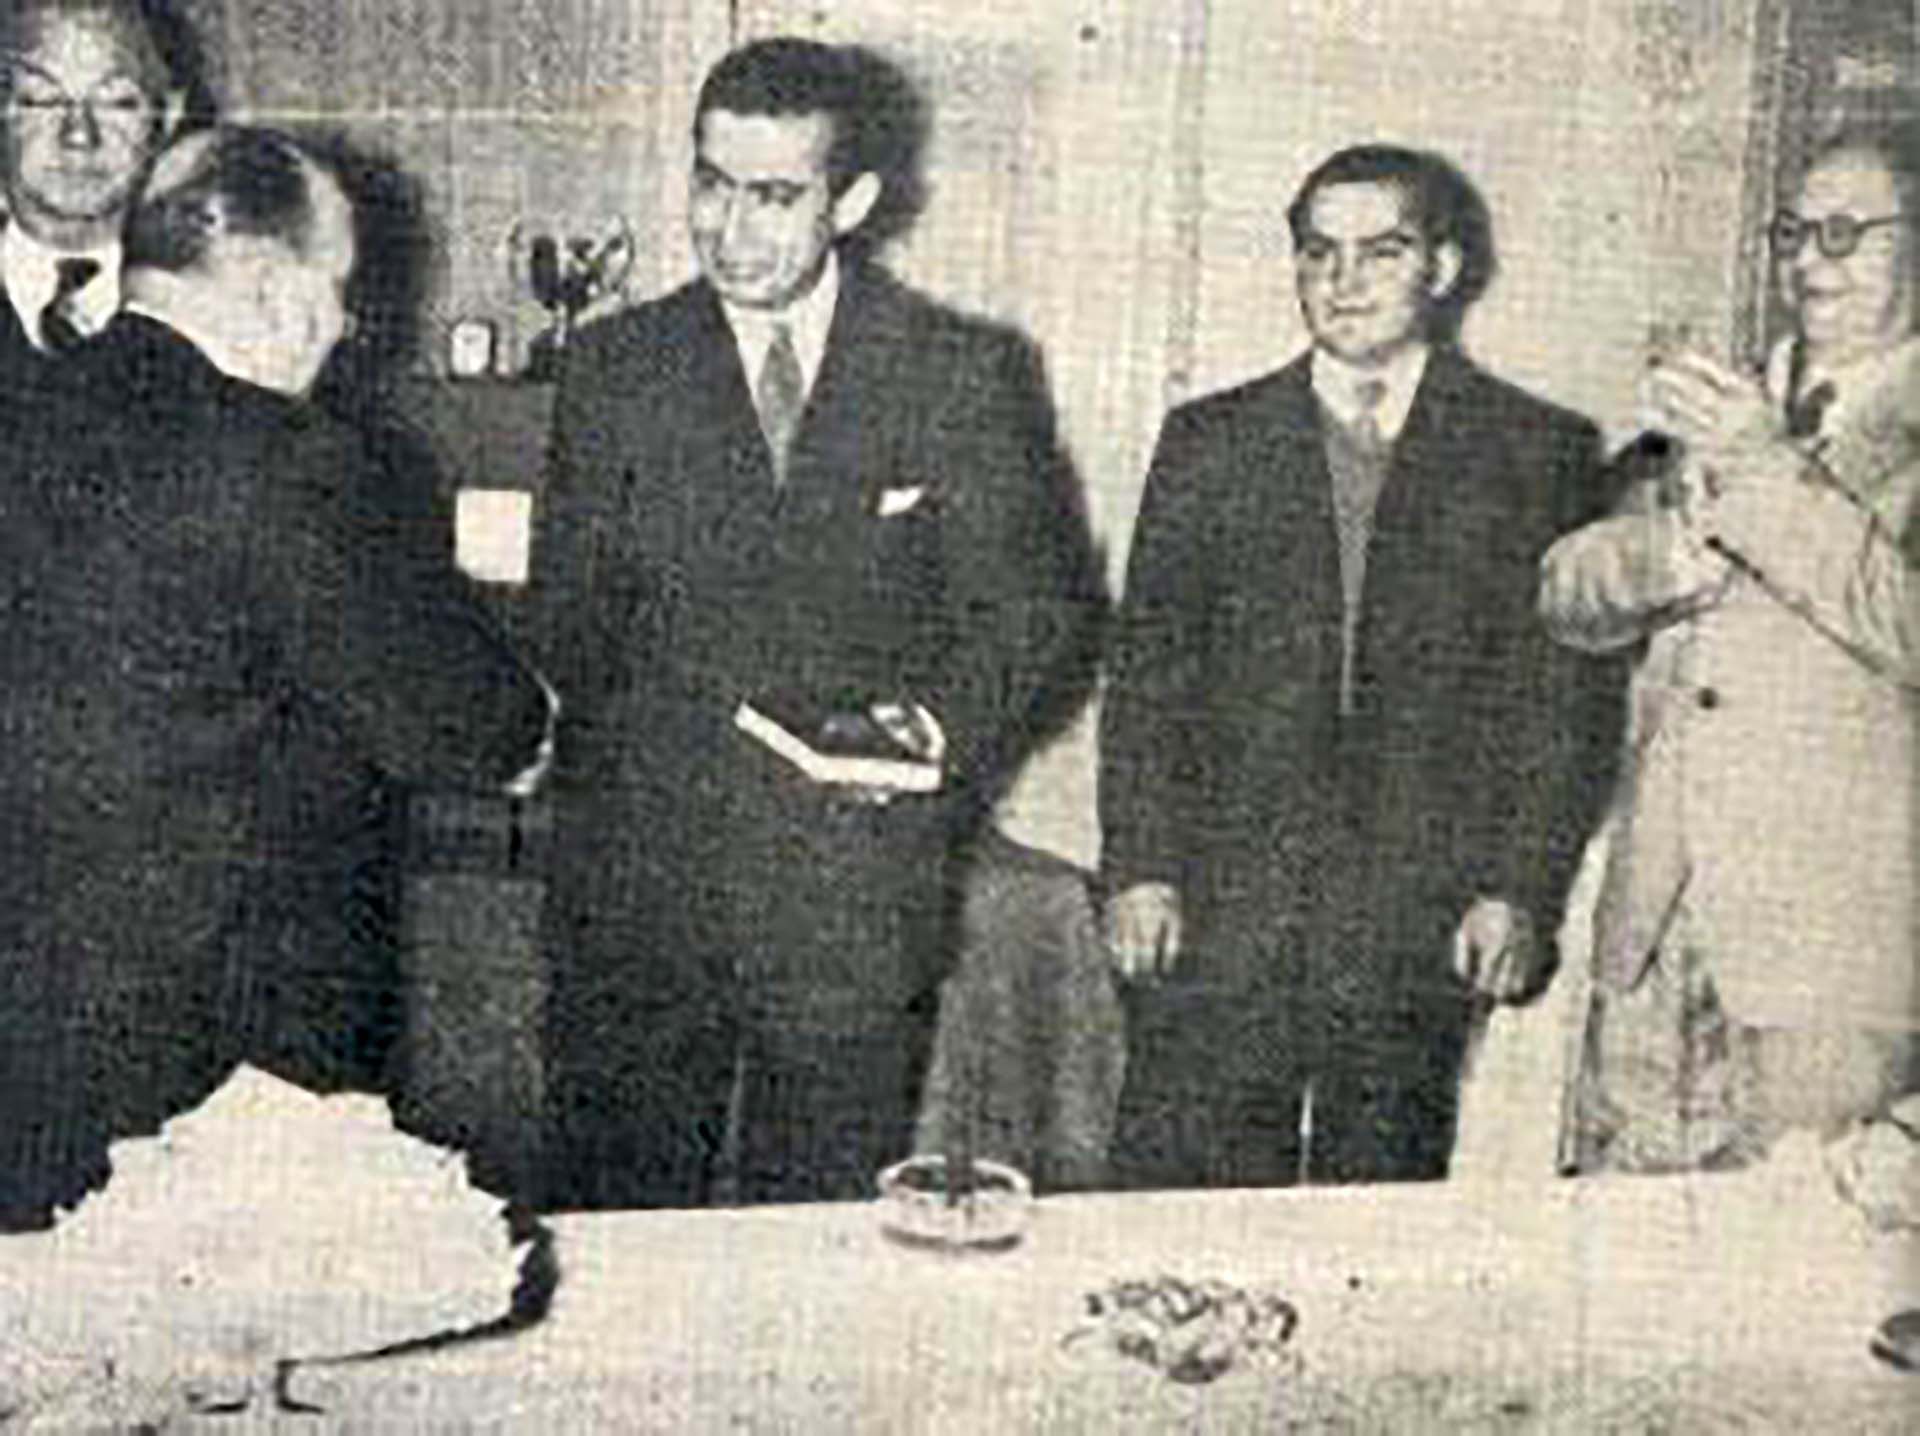 Santiago Policastro ganó el Oso de Berna en 1954. Fue su consagración mundial como el mejor bartender de todo el planeta